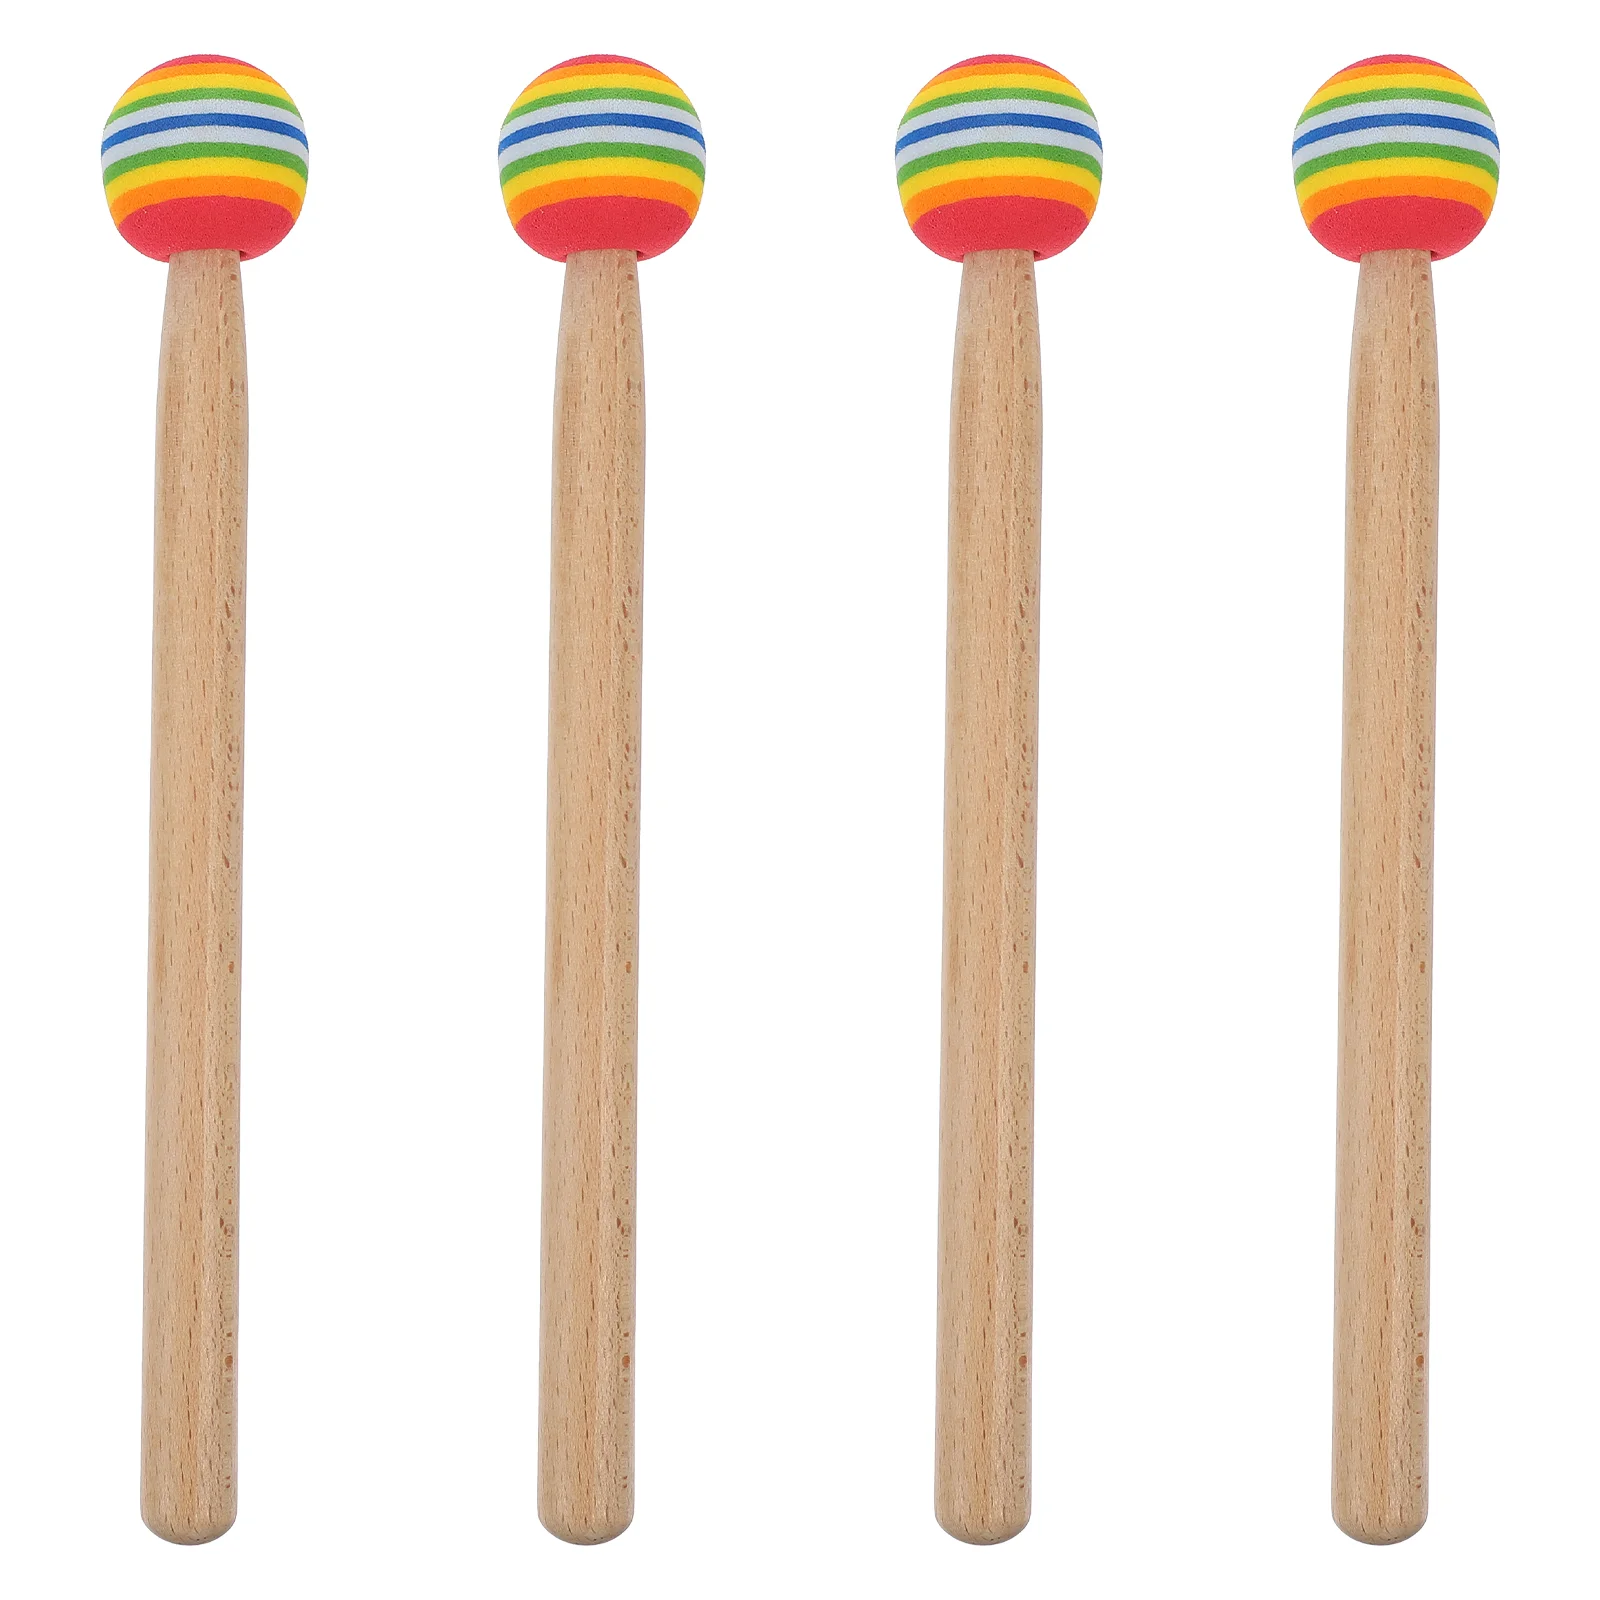 

4 Pcs Lollipop Drum Music Wood Mallets Kids Mini Toys Sticks Instrument Parts Percussion Wooden Gadget Child Accessories Drums